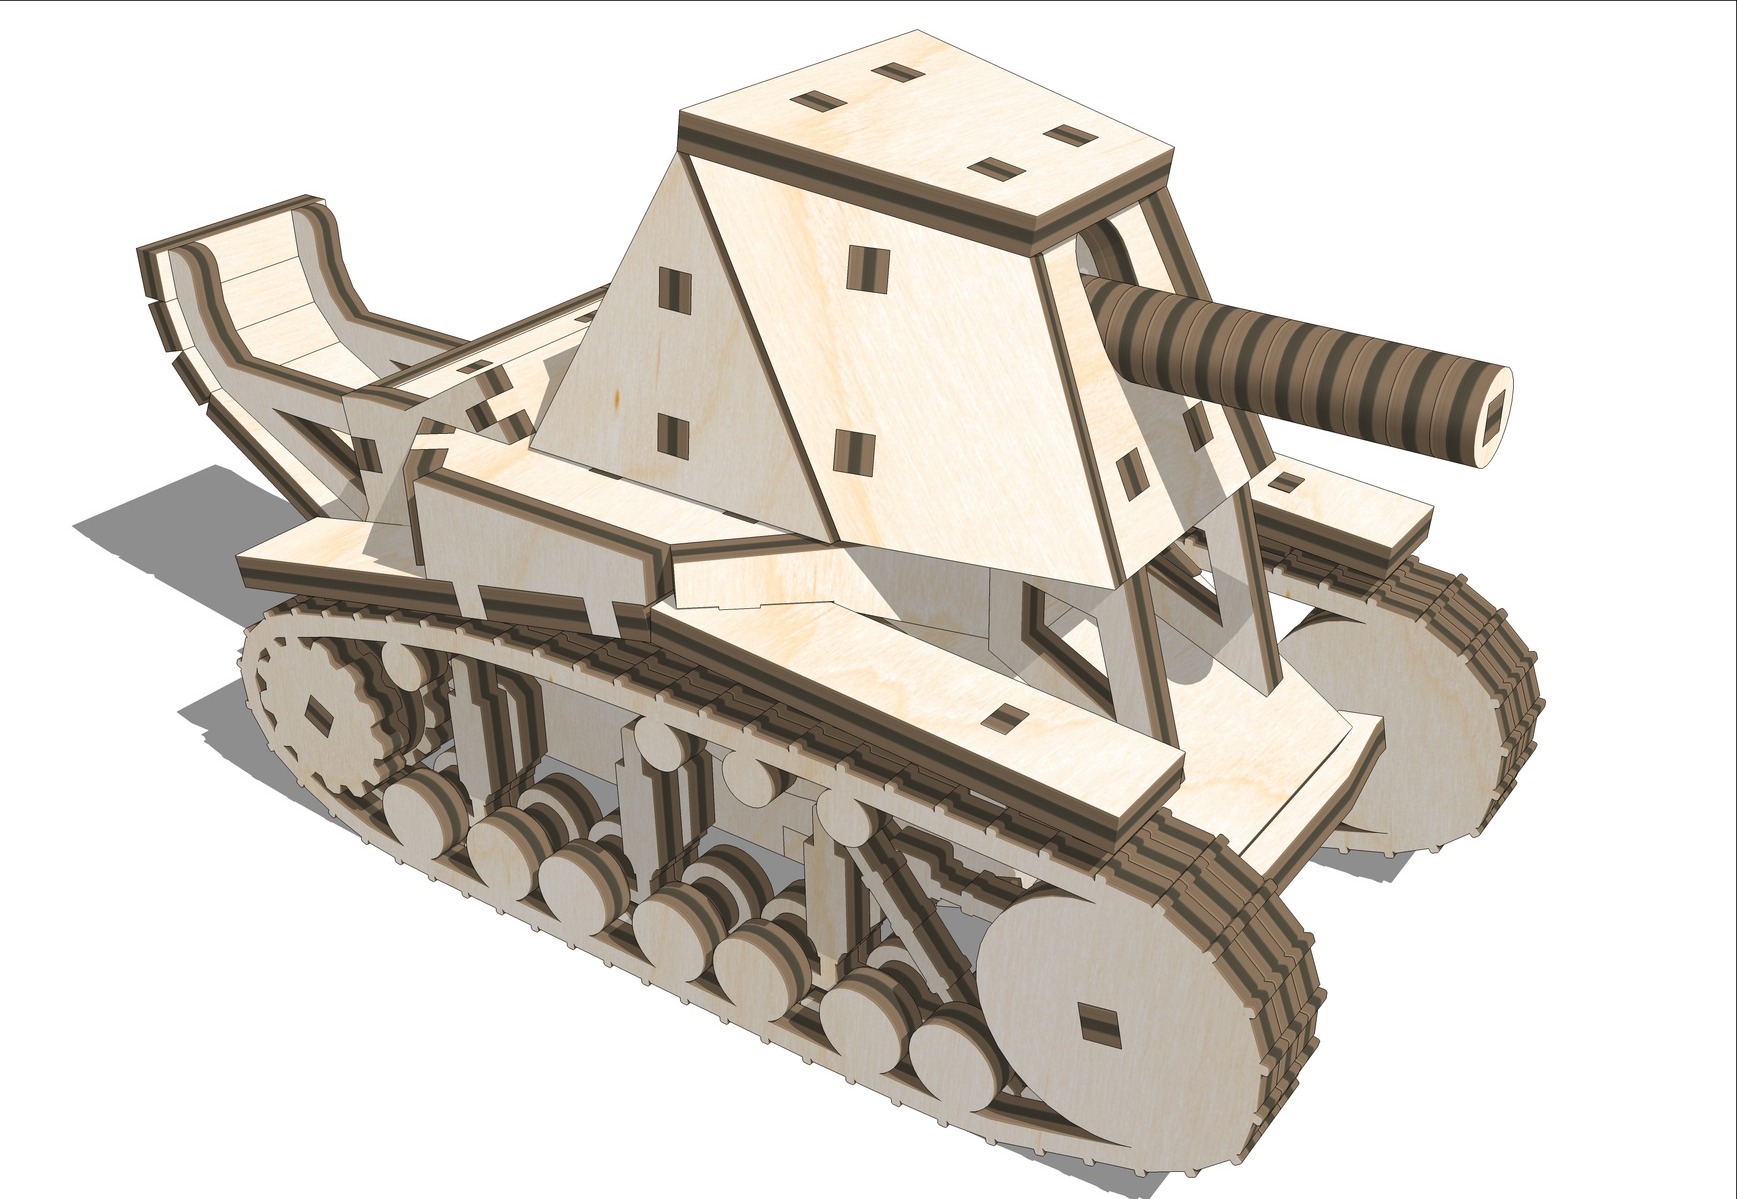 激光切割坦克 SU-18 木制 3D 拼图